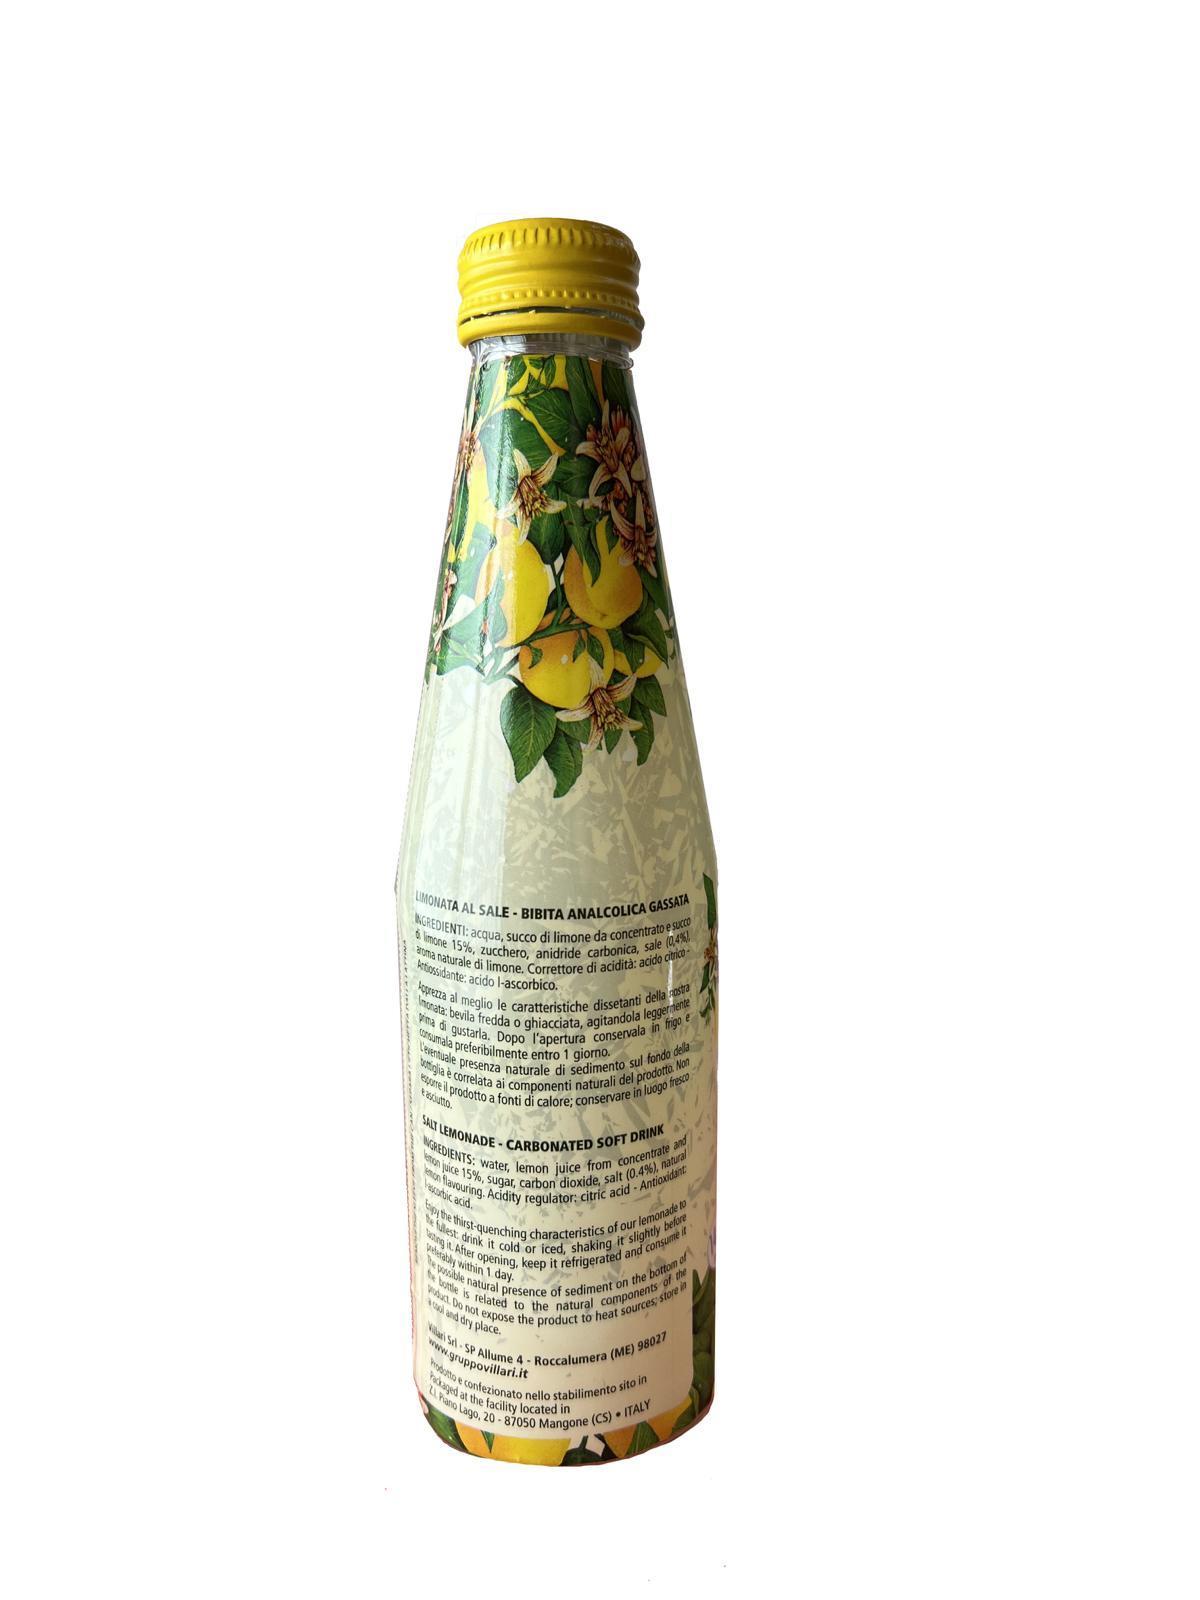 Limonata Fior di sale Lumi antica ricetta siciliana 12 bottiglie in vetro da 250ml. Retro Bottiglia